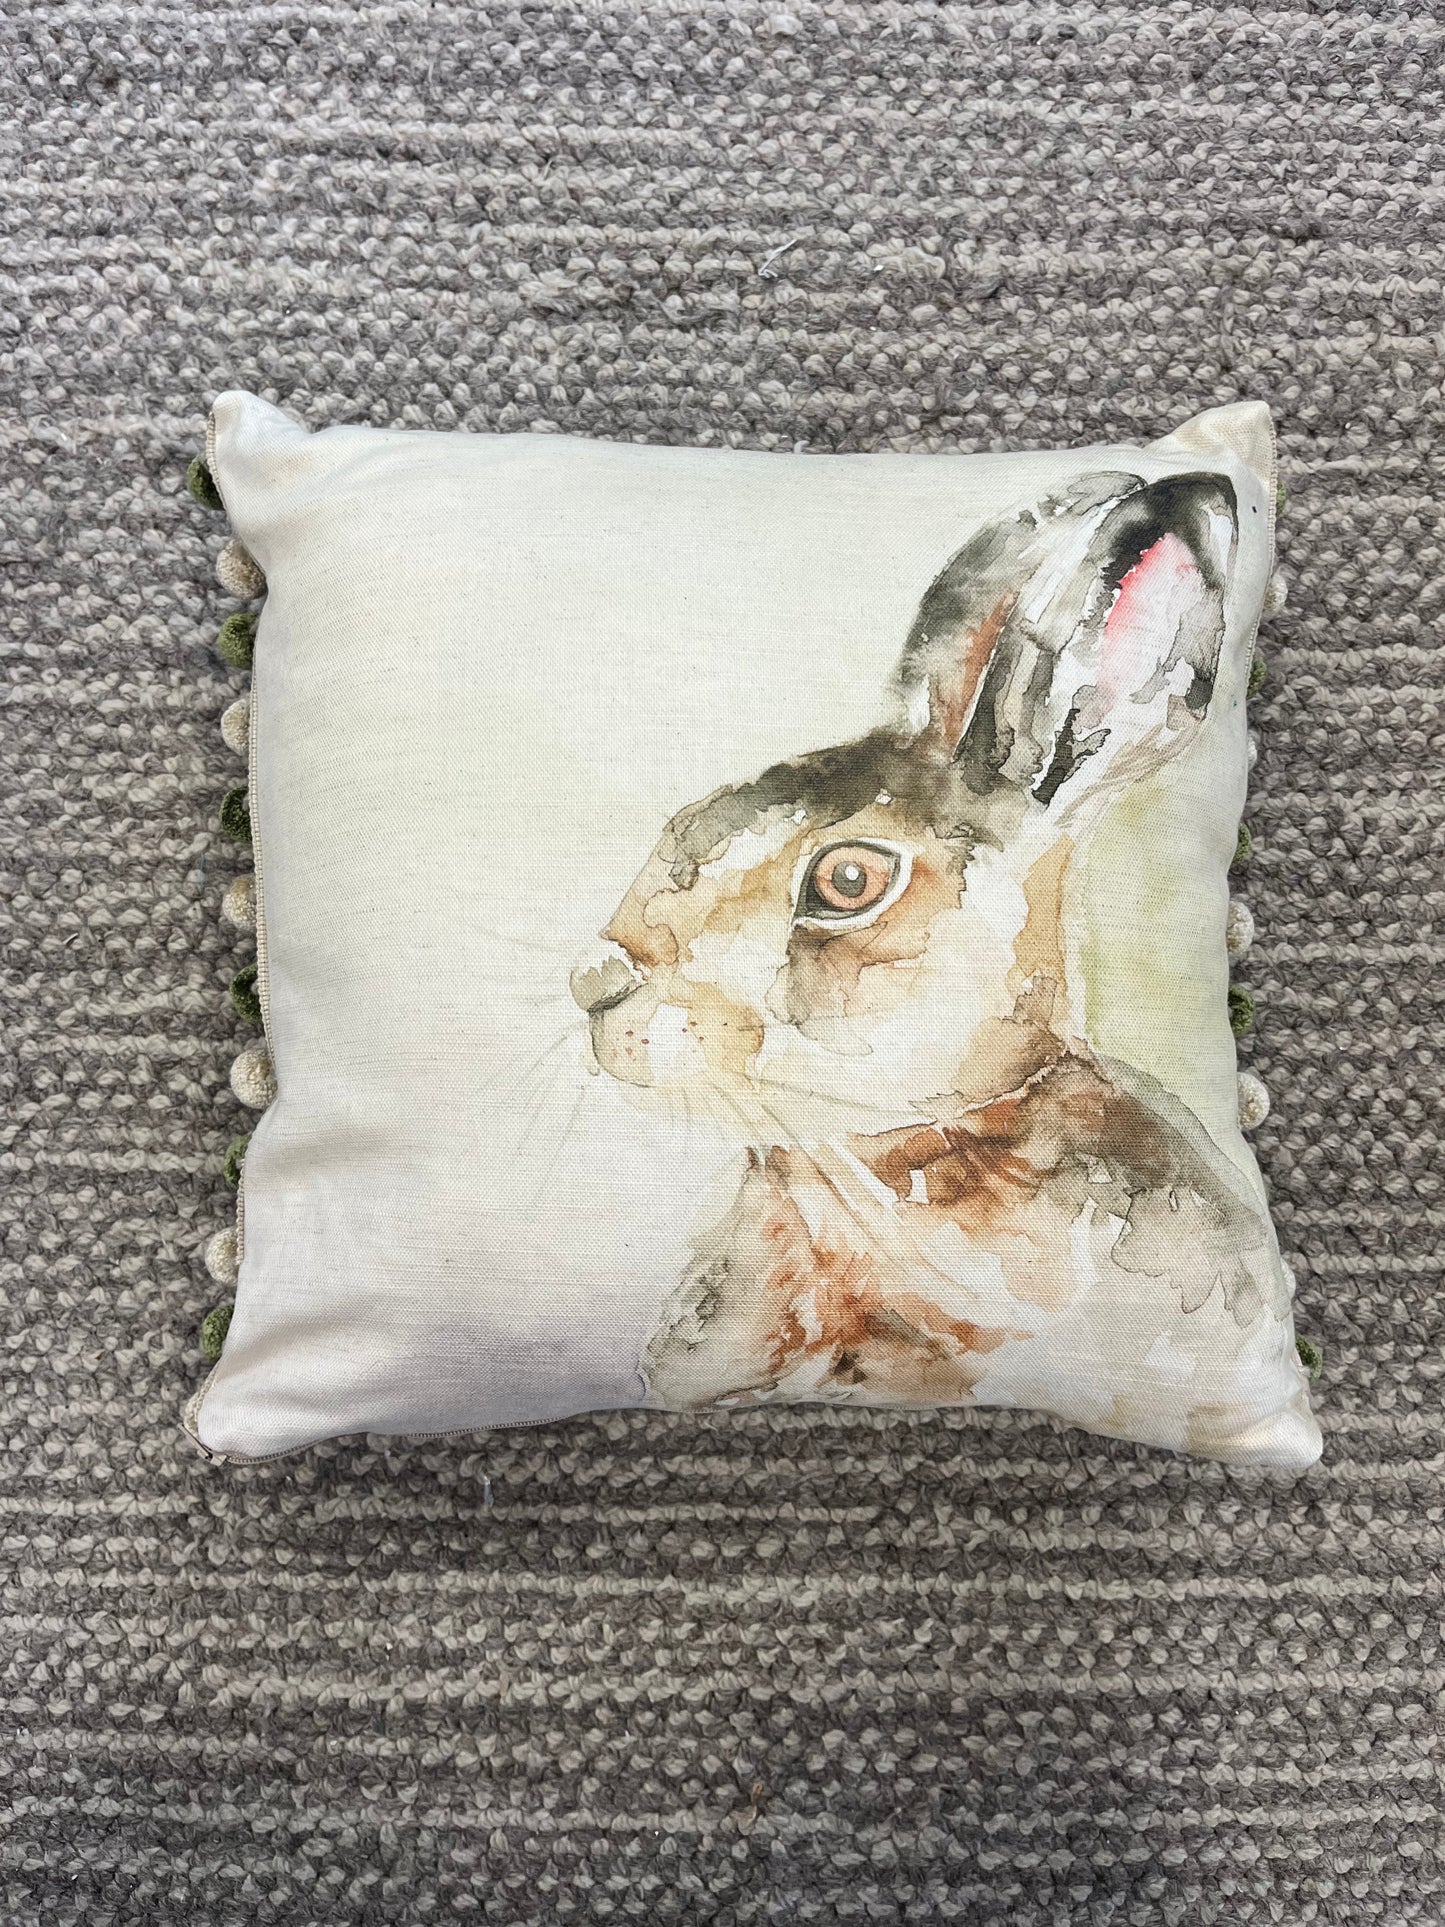 Hare Cushion Cover With Pom Pom Trim